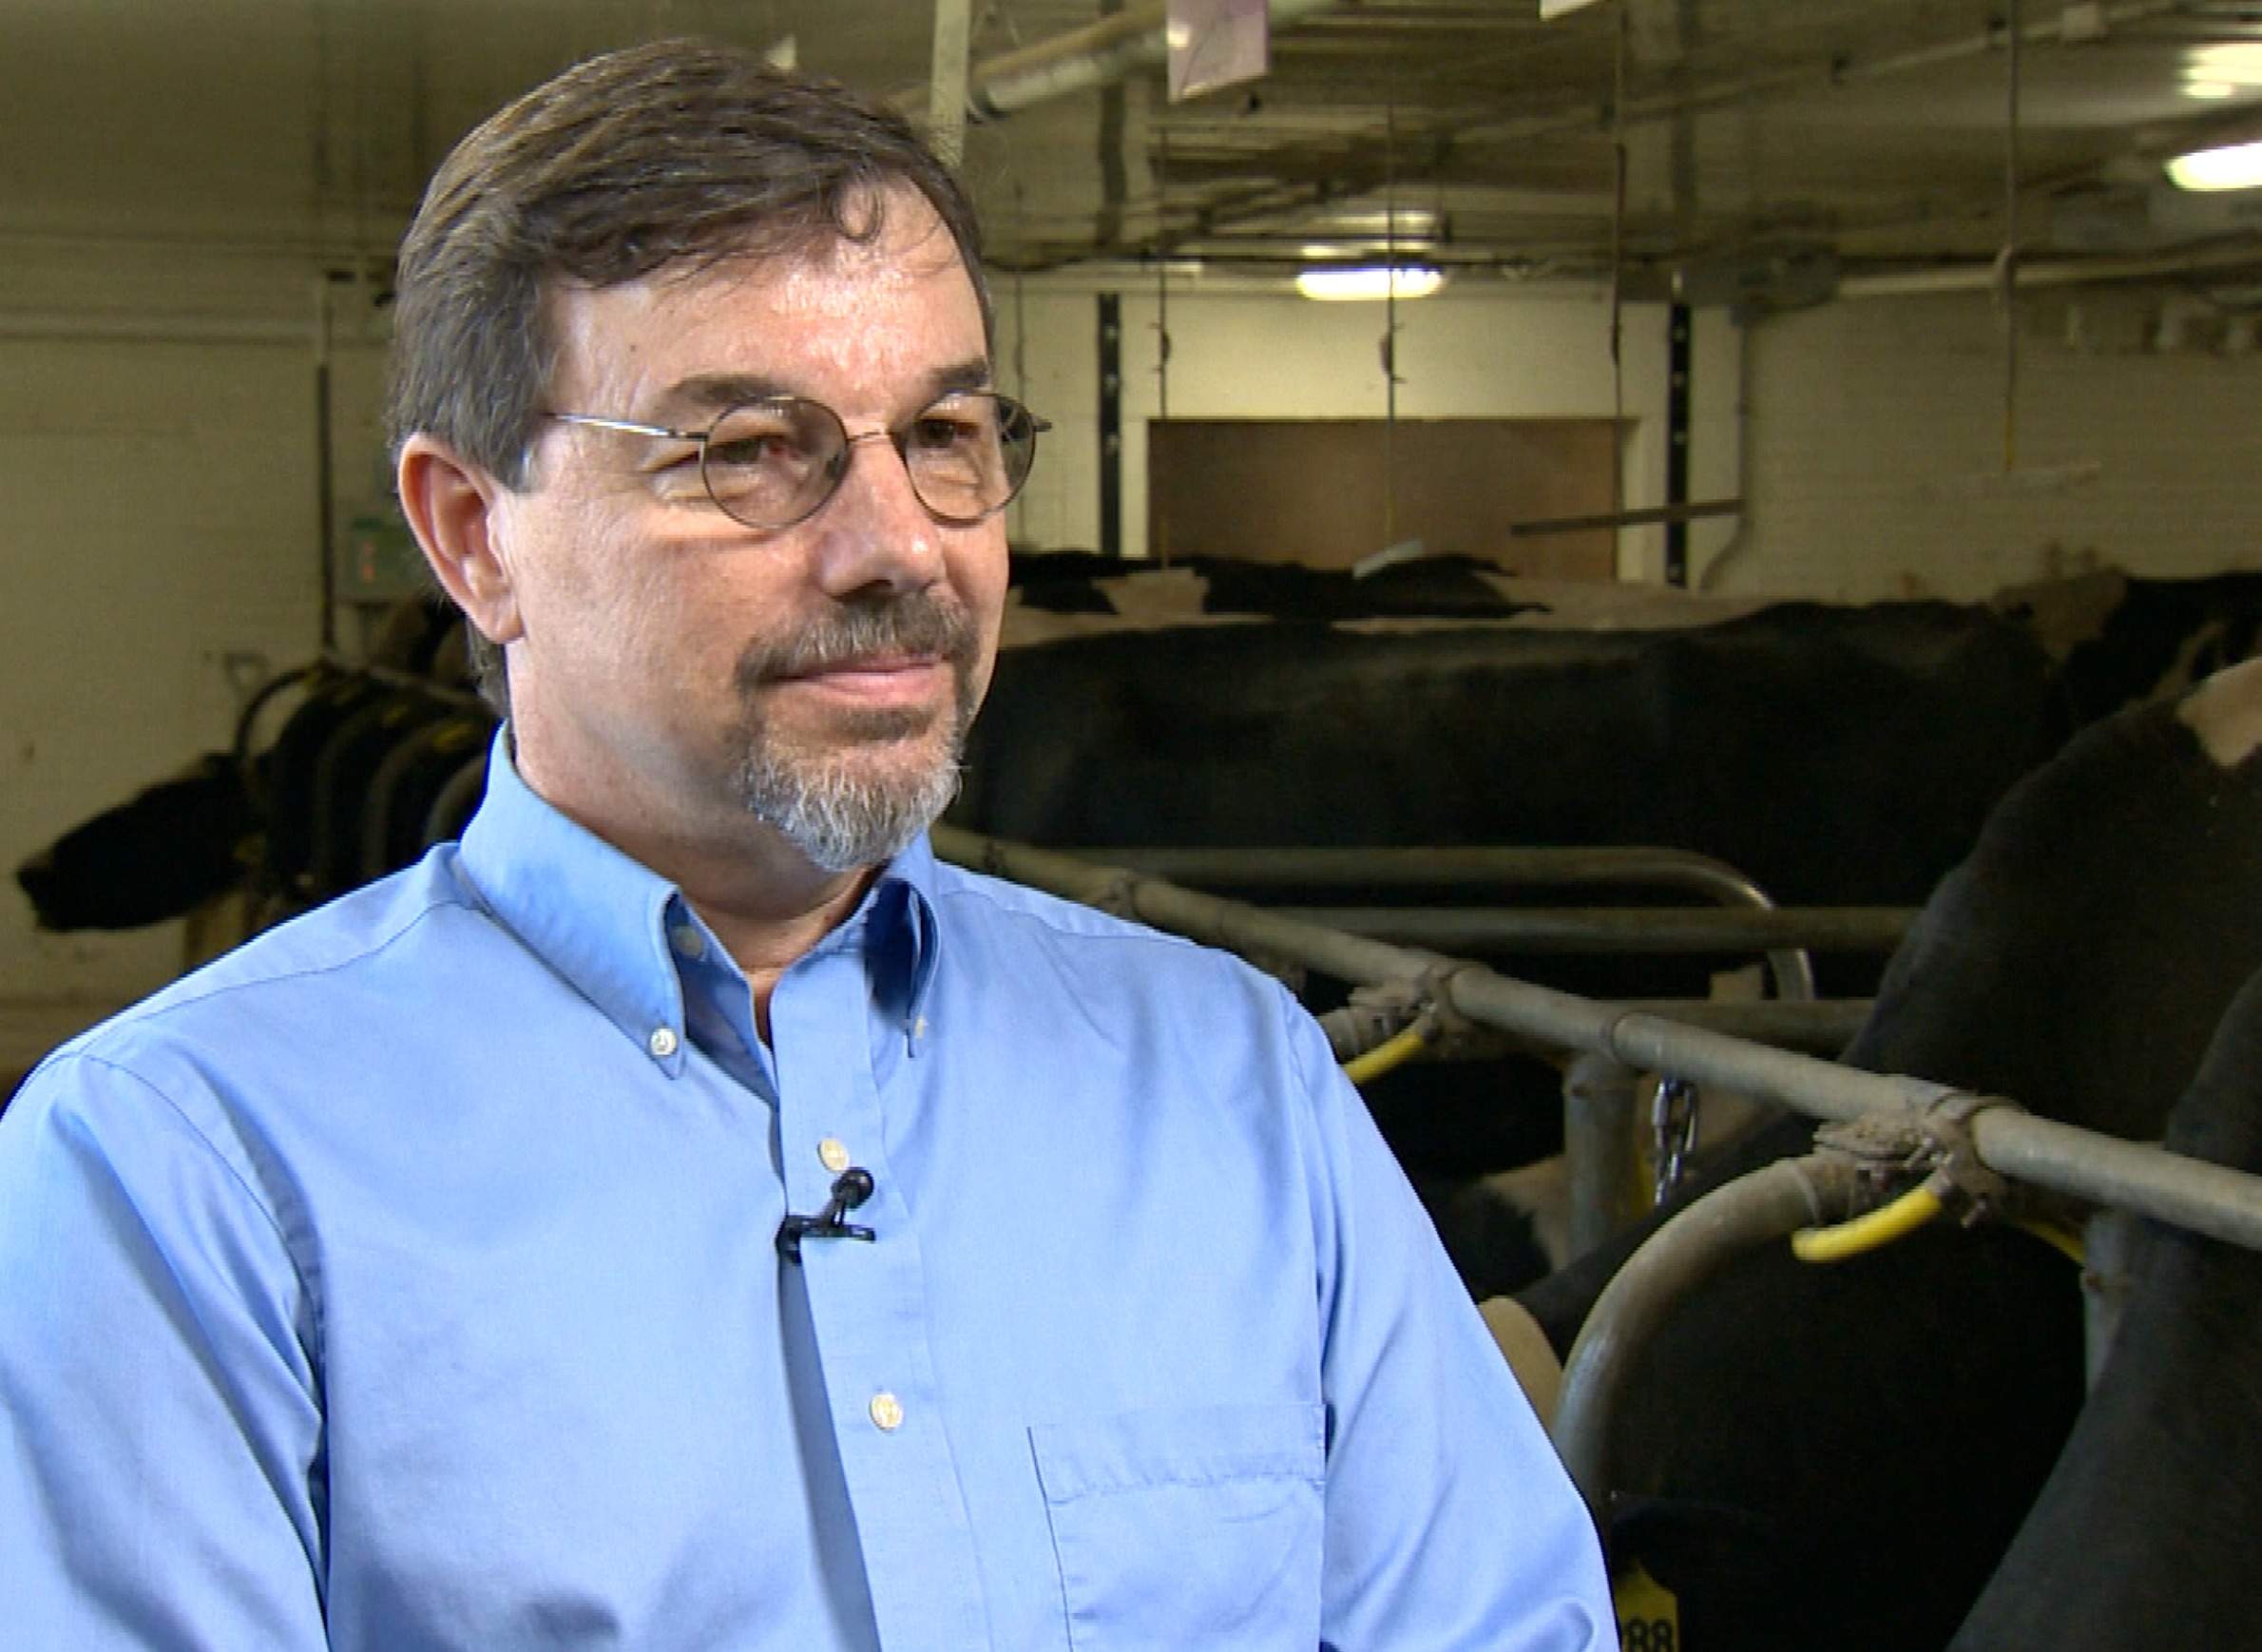 Brian Gould discusses milk prices